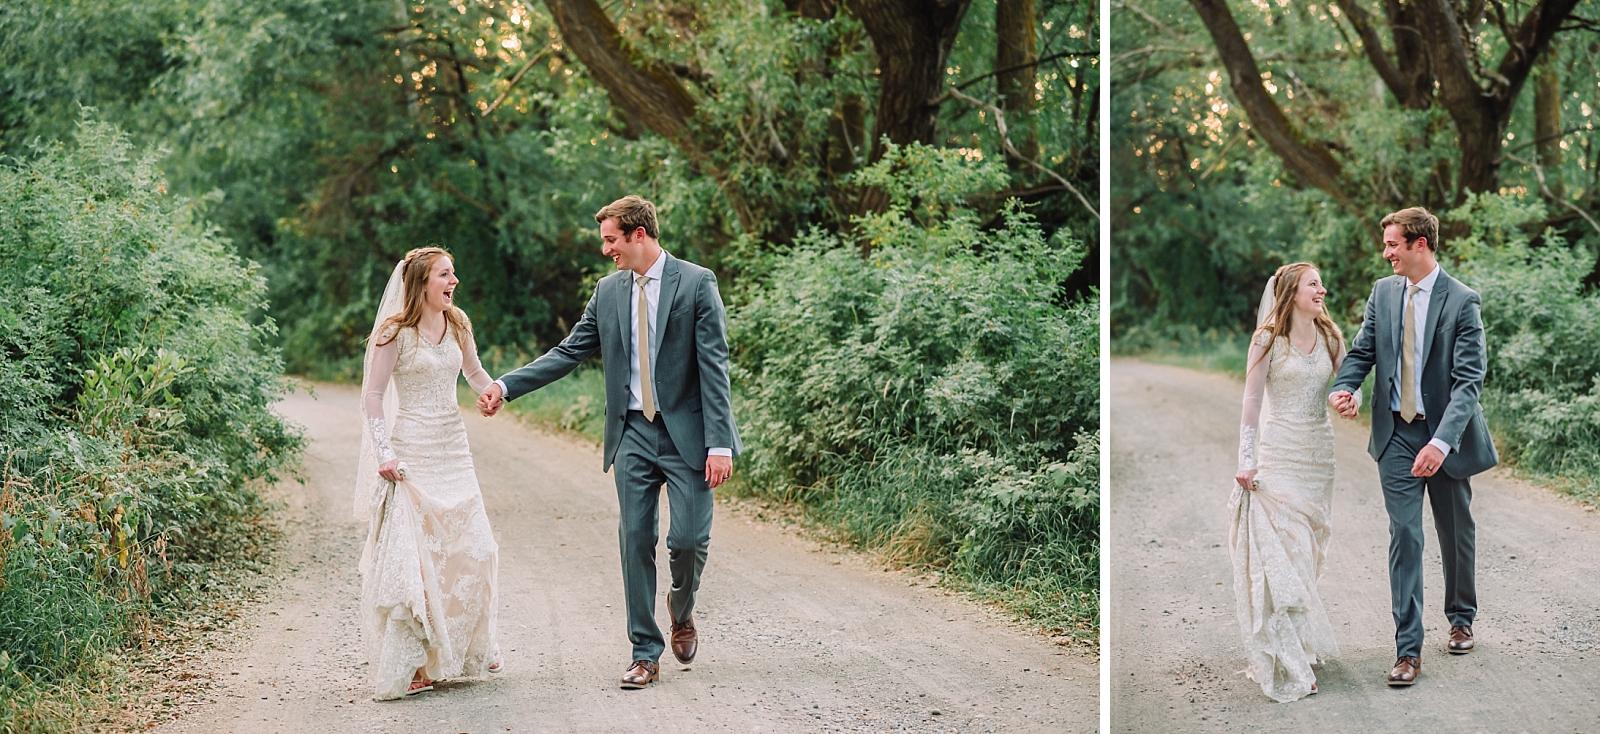 bride and groom walking on dirt road